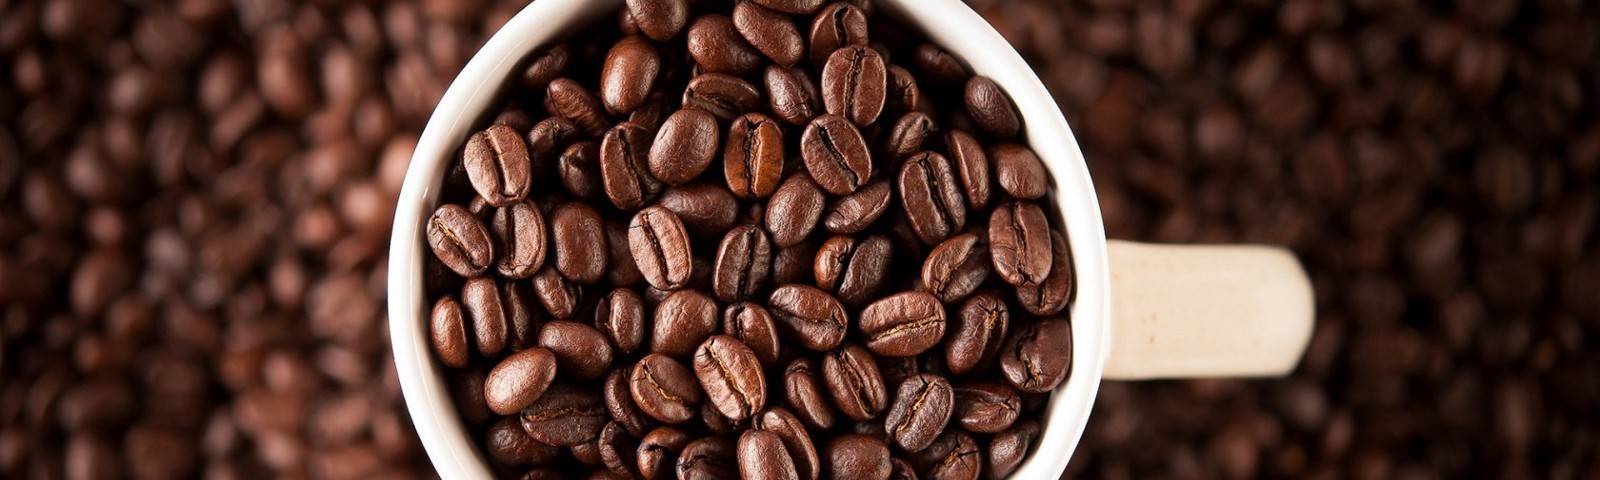 Кофе либерика - что это такое? описание сорта